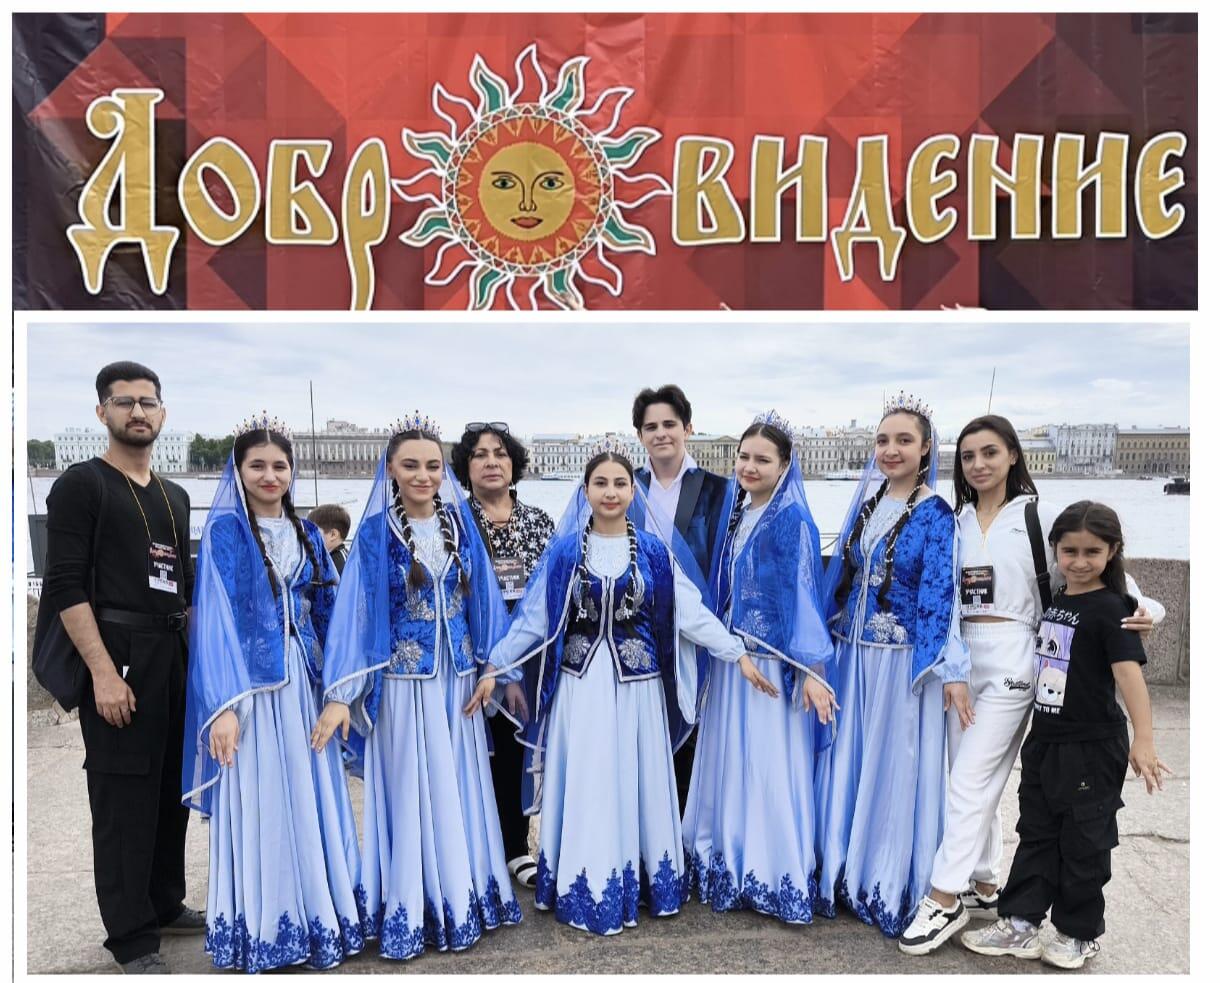 Азербайджанская культура представлена на международном фестивале "Добровидение" в Санкт-Петербурге